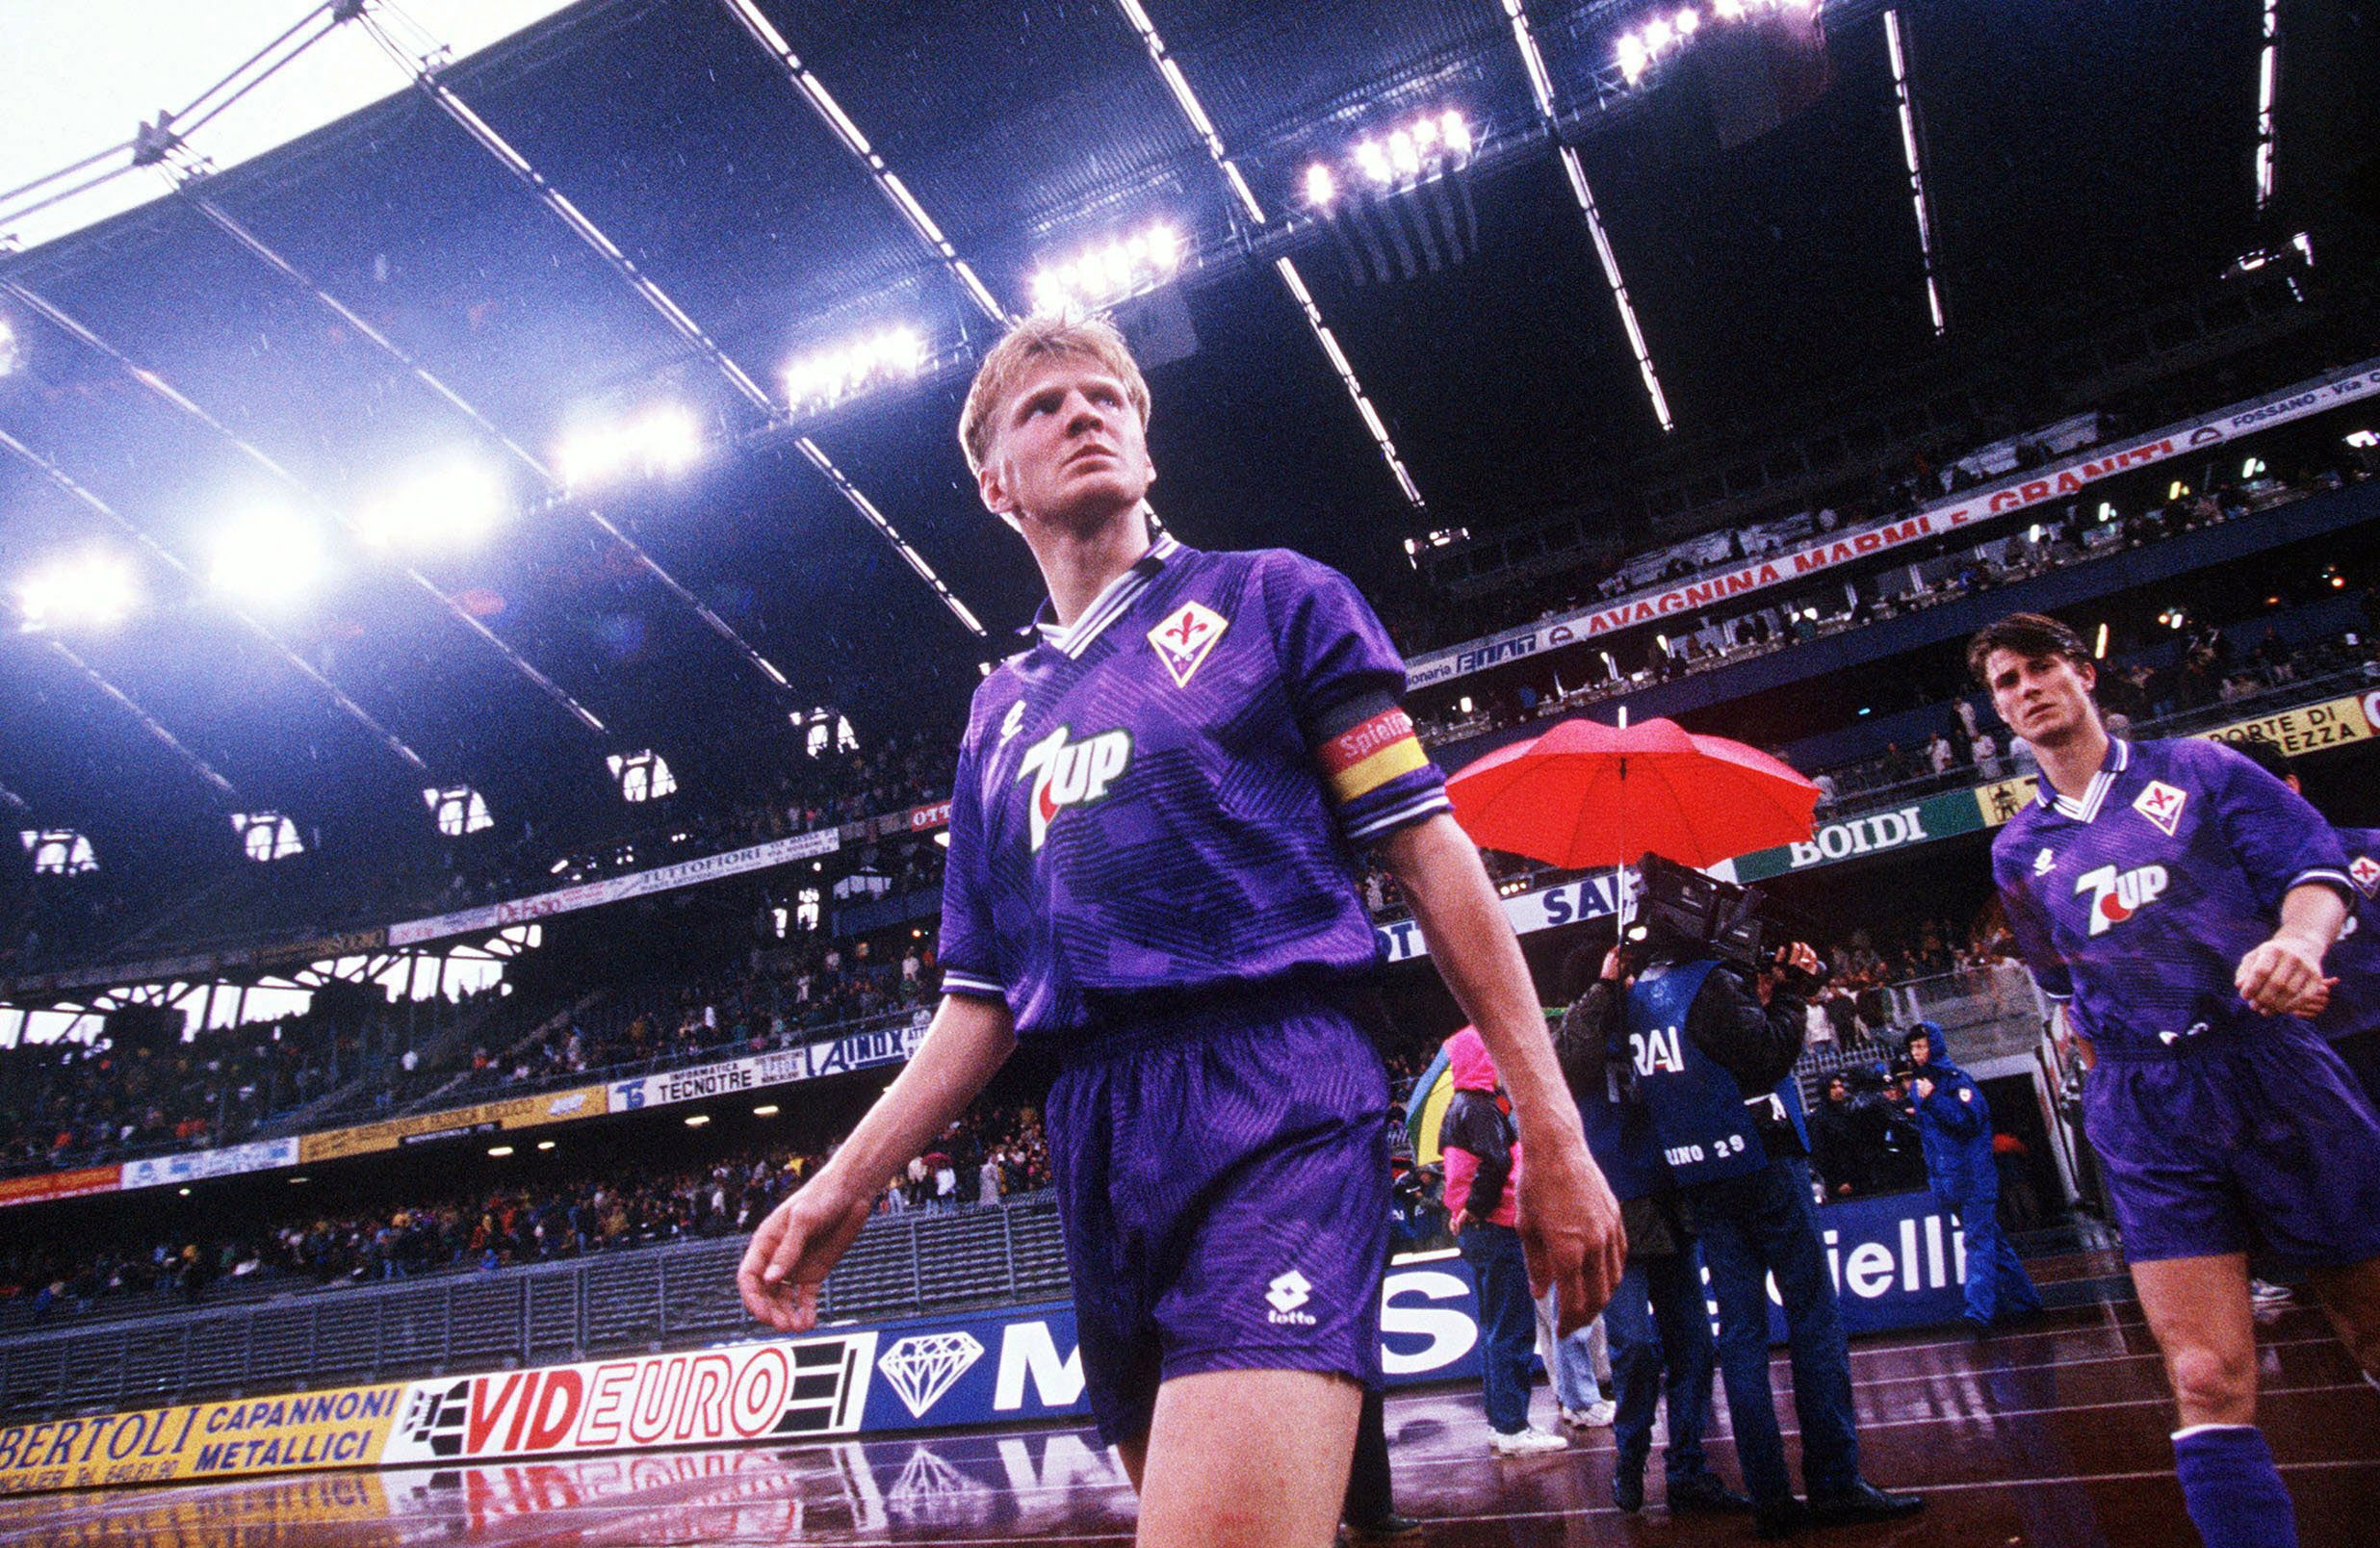 Stefan Effenberg at Fiorentina in 1992/93.